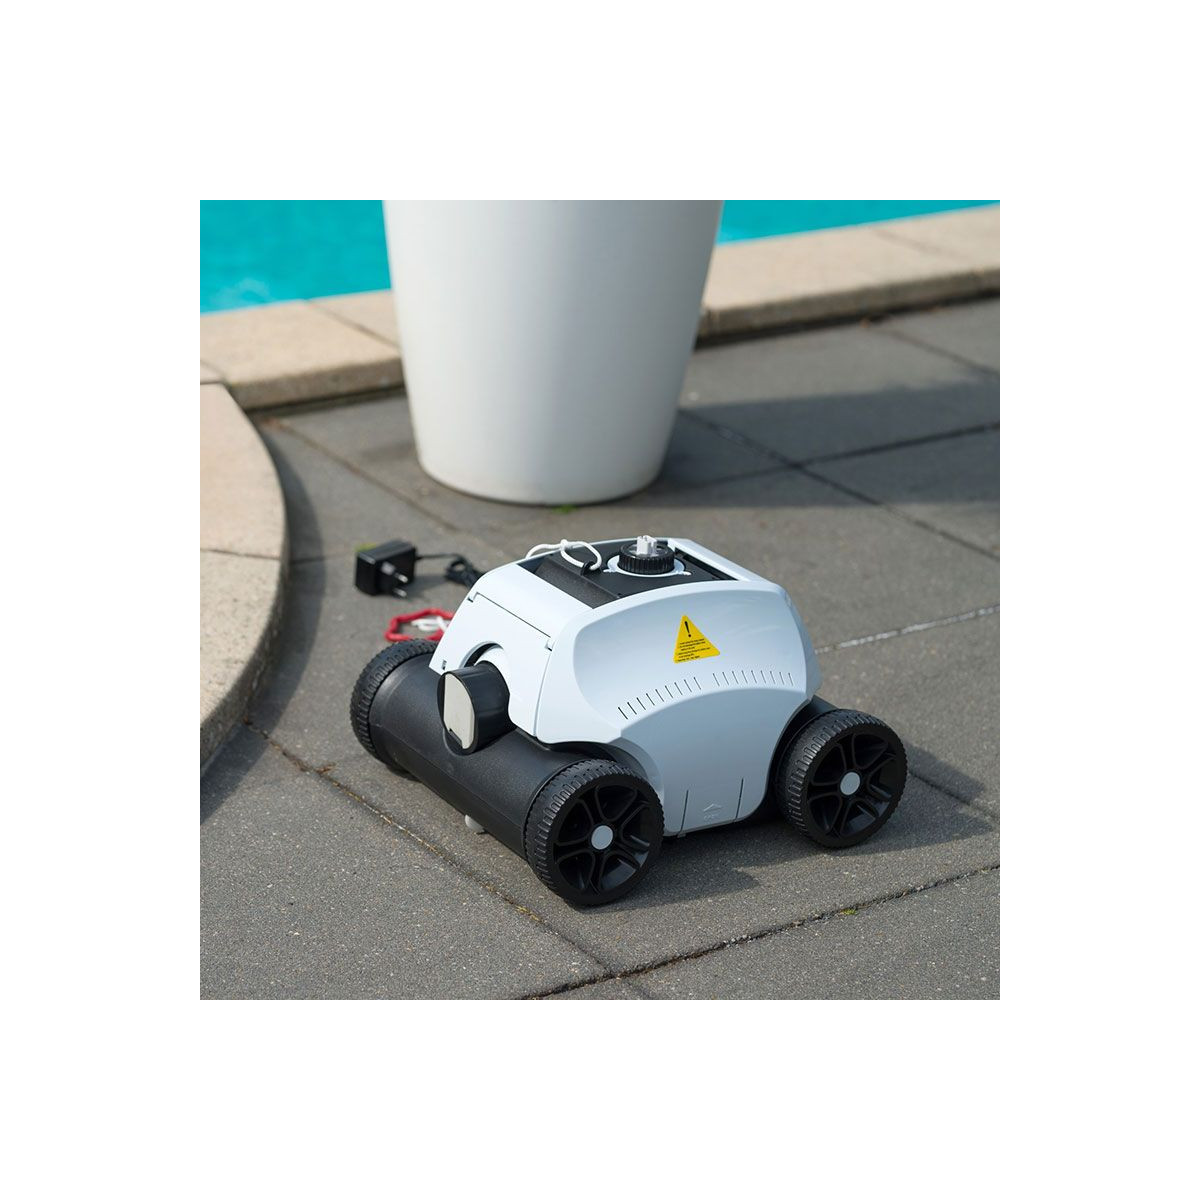 Robot de piscine à batterie sans fil Robotclean Accu Pool S - Ubbink